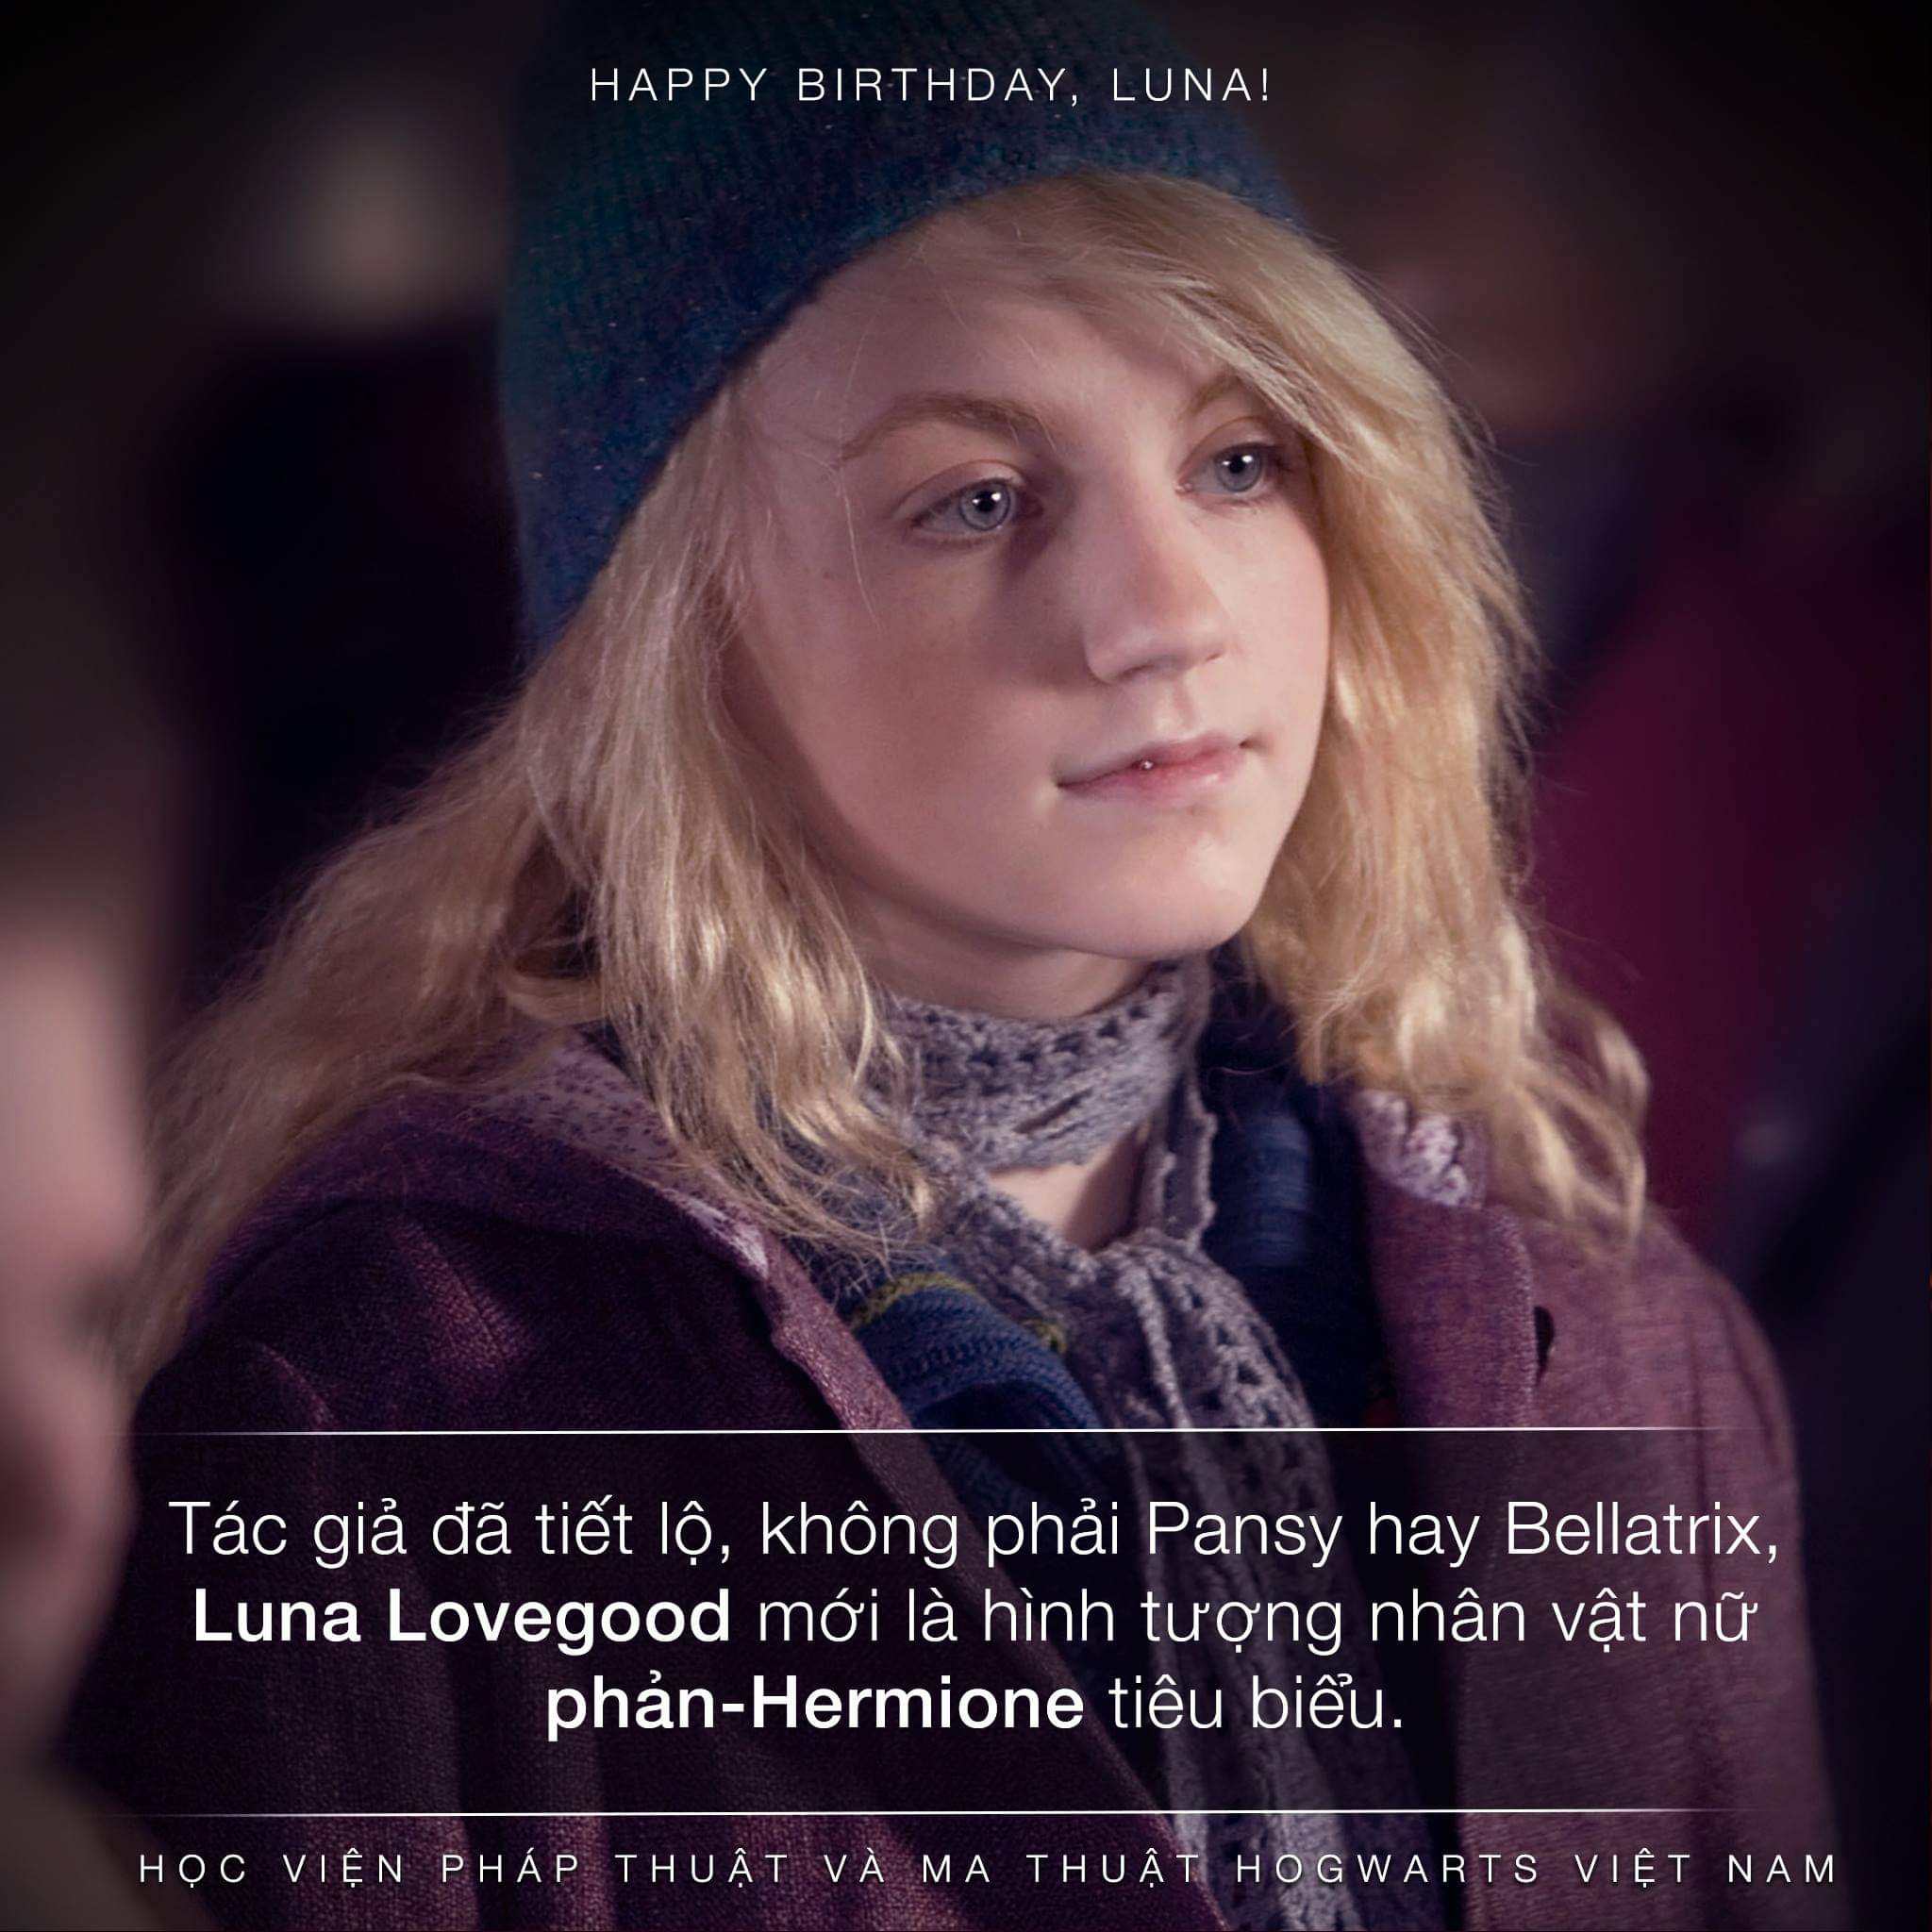 Luna Lovegood chính là thái cực xa nhất đối với hình mẫu nhân vật Hermione